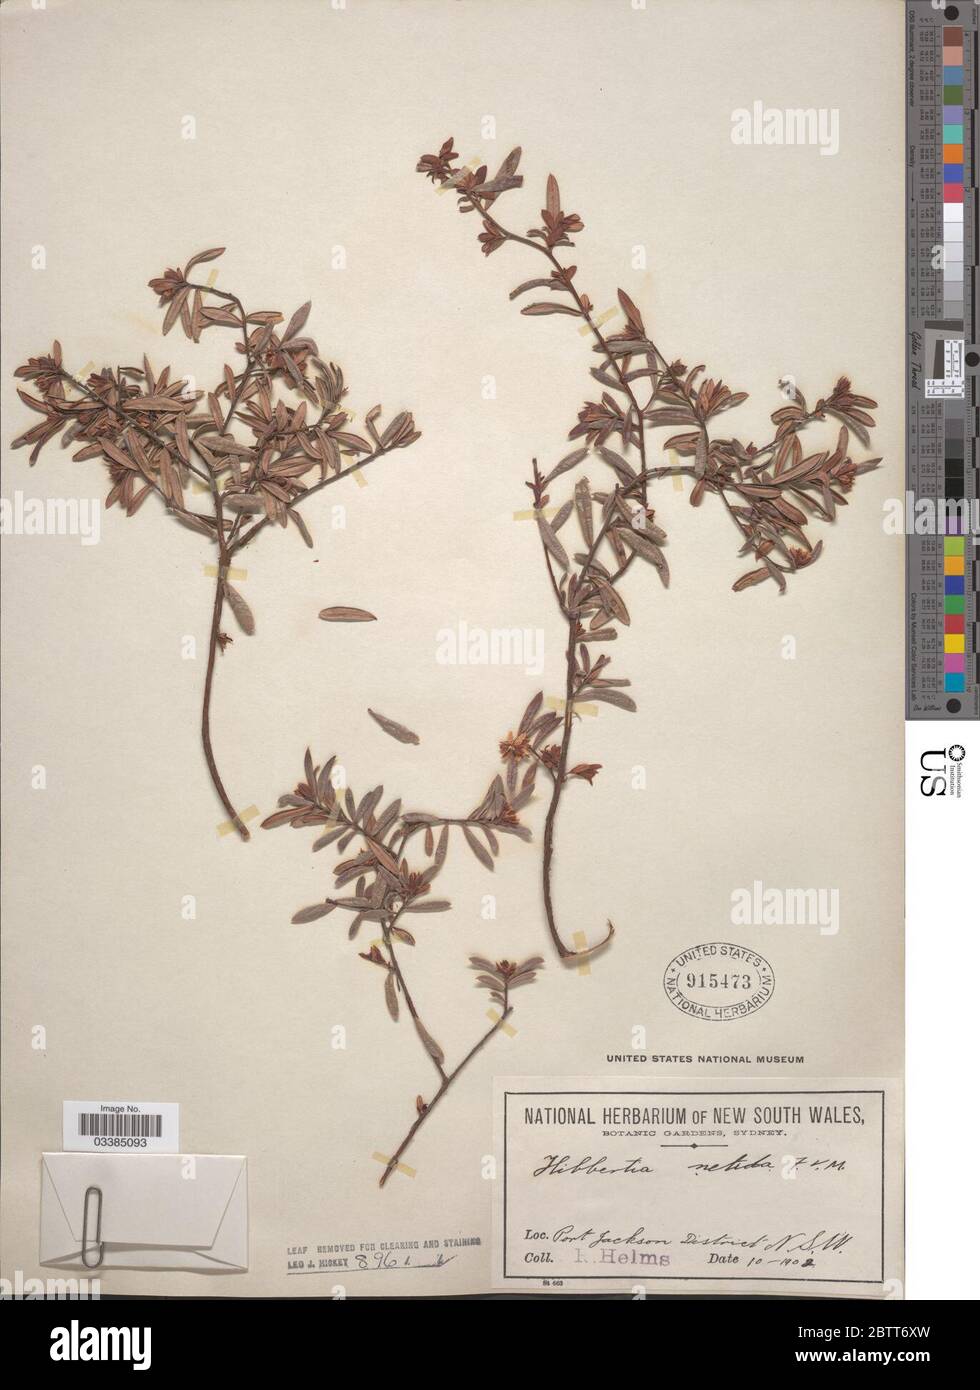 Hibbertia nitida Benth. Stock Photo